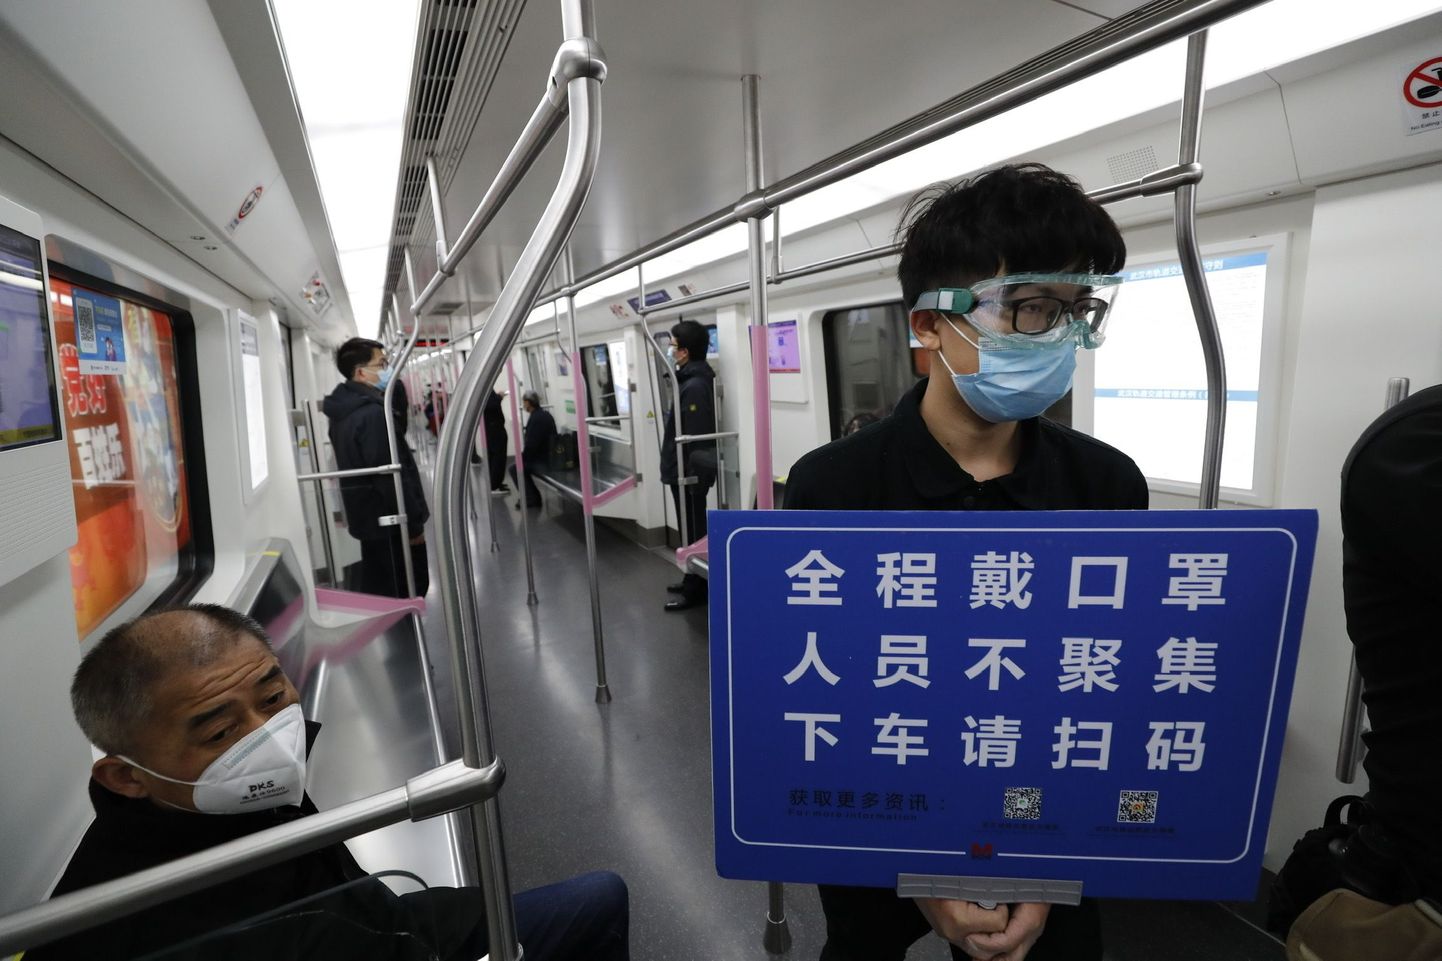 28.märts 2020, Wuhan. Hiinas on liikumispiirang läbi saanud. Ohutustööline palub reisijatel skaneerida QR-kood oma nime tuvastamiseks, lasta end kraadida ja kanda maske.